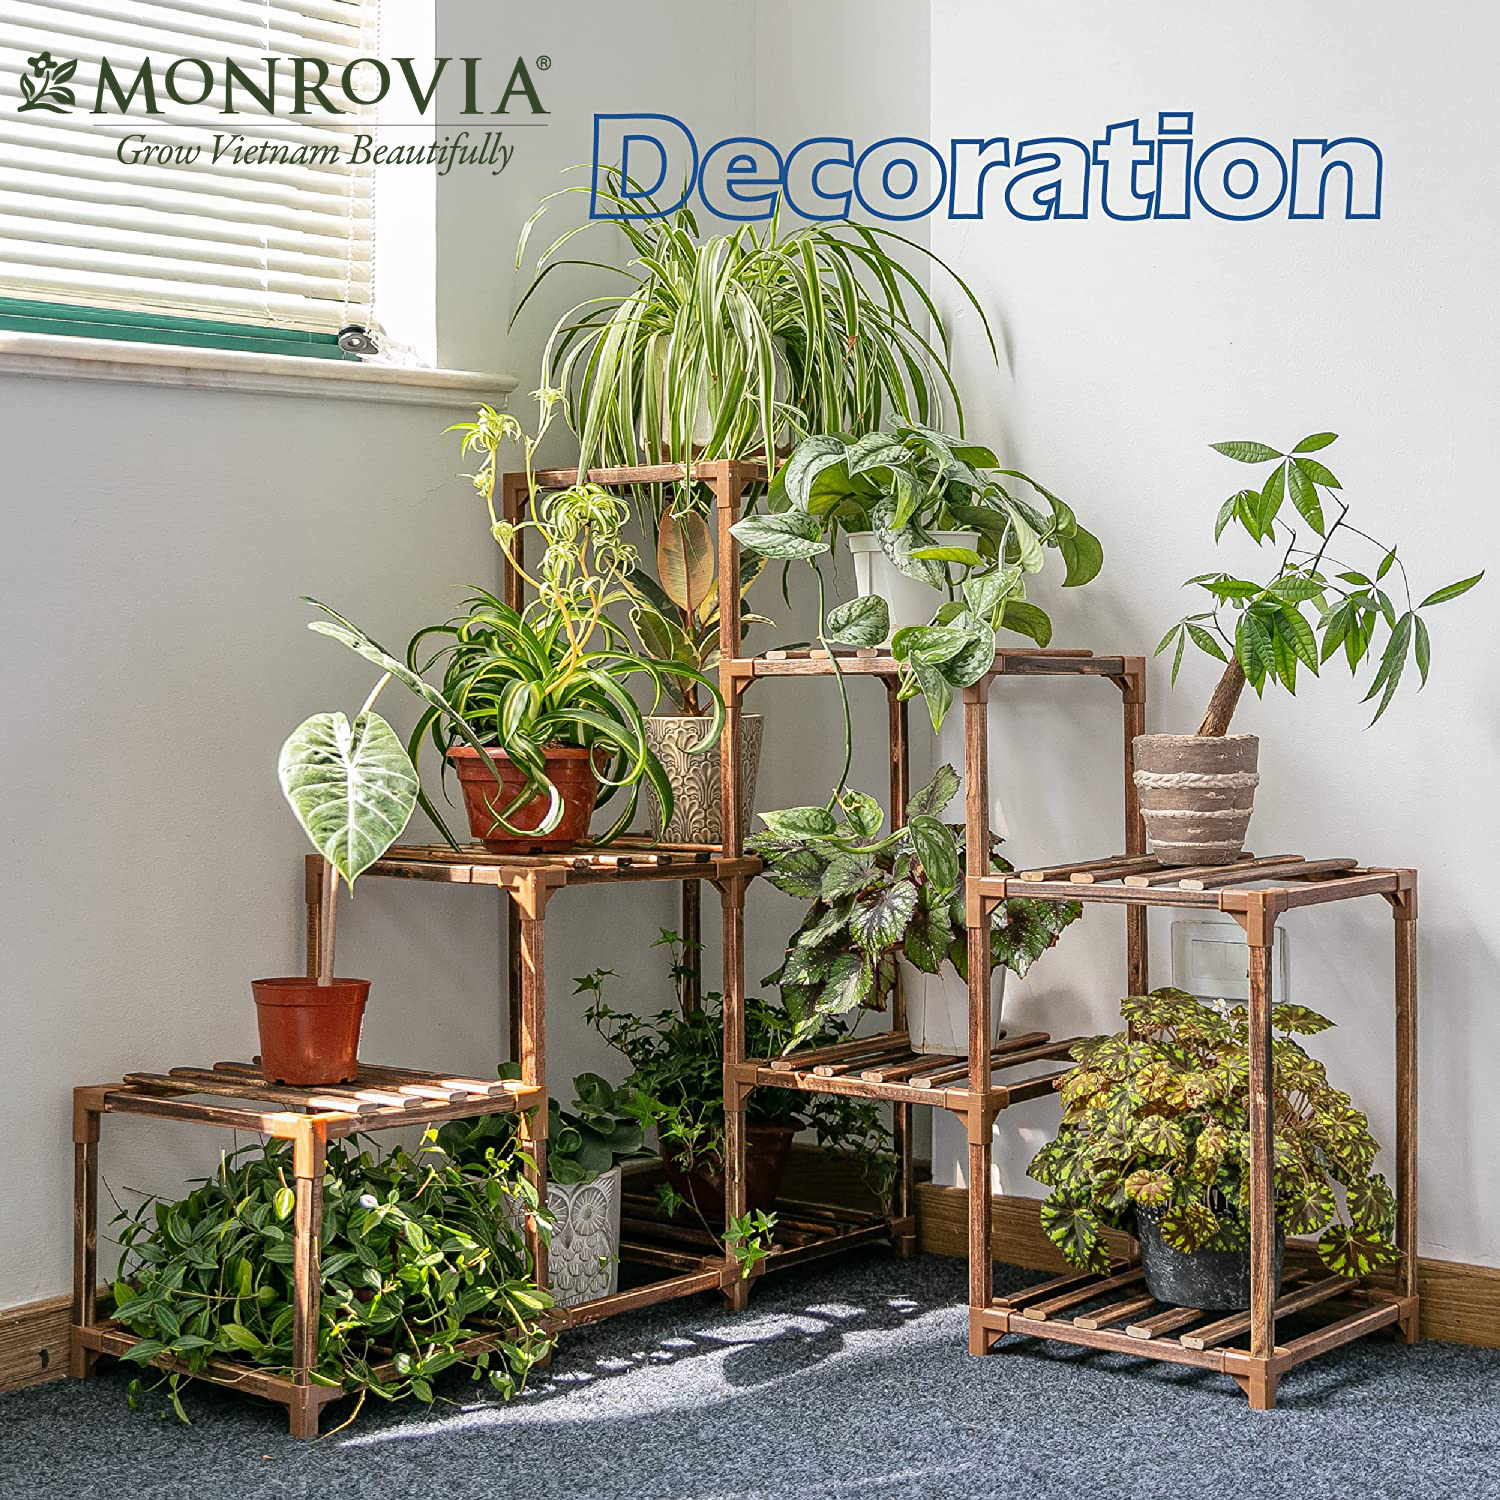 Kệ gỗ decor Monrovia để cây trang trí trong nhà, ban công siêu bền bỉ, tiêu chuẩn Châu Âu